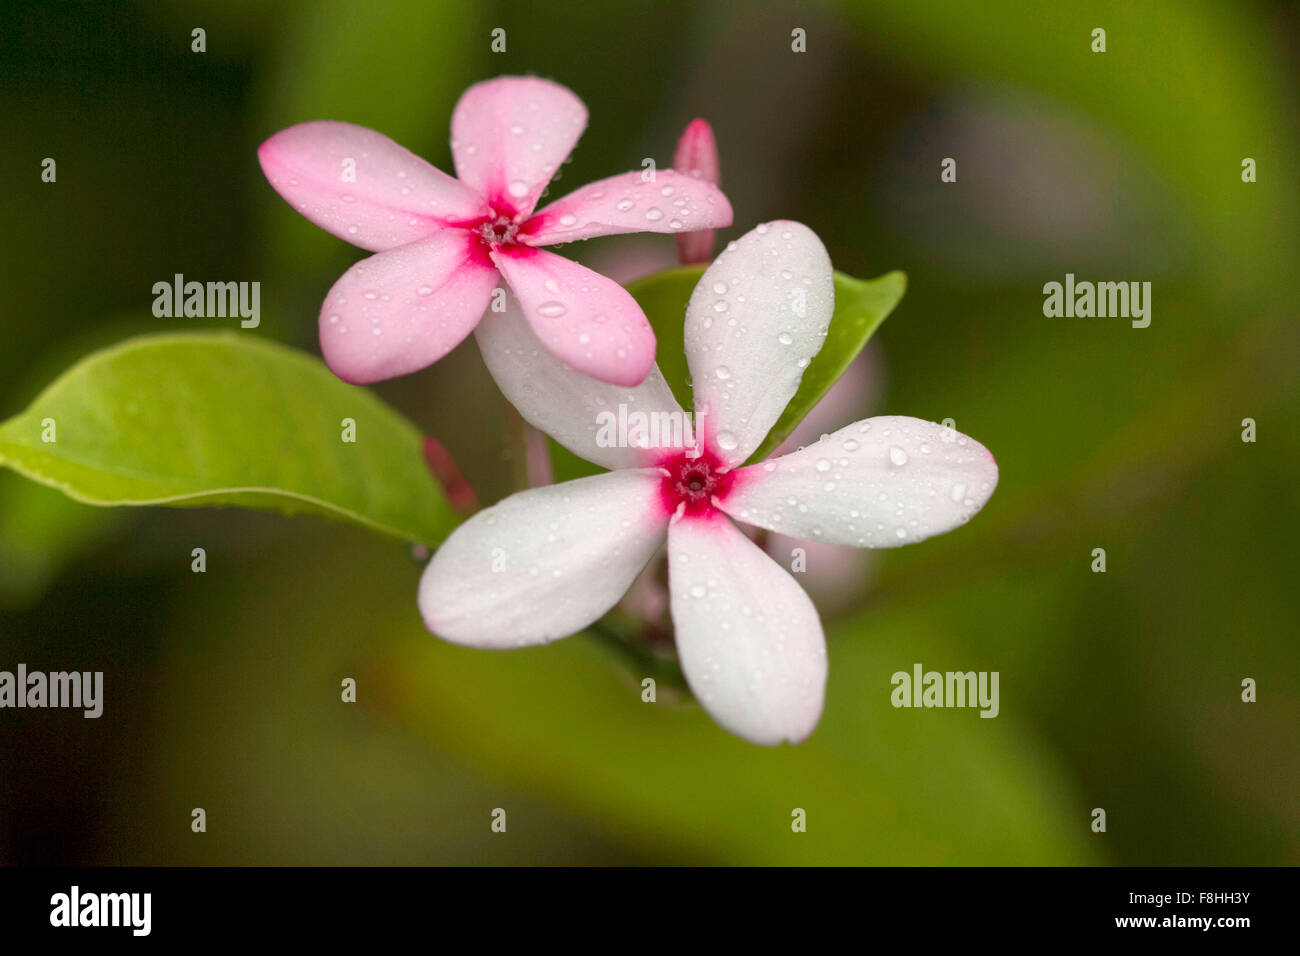 Close up of Sadafuli (Catharanthus Roseus), Madagascar periwinkle or rosy periwinkle flower. Goa, India Stock Photo